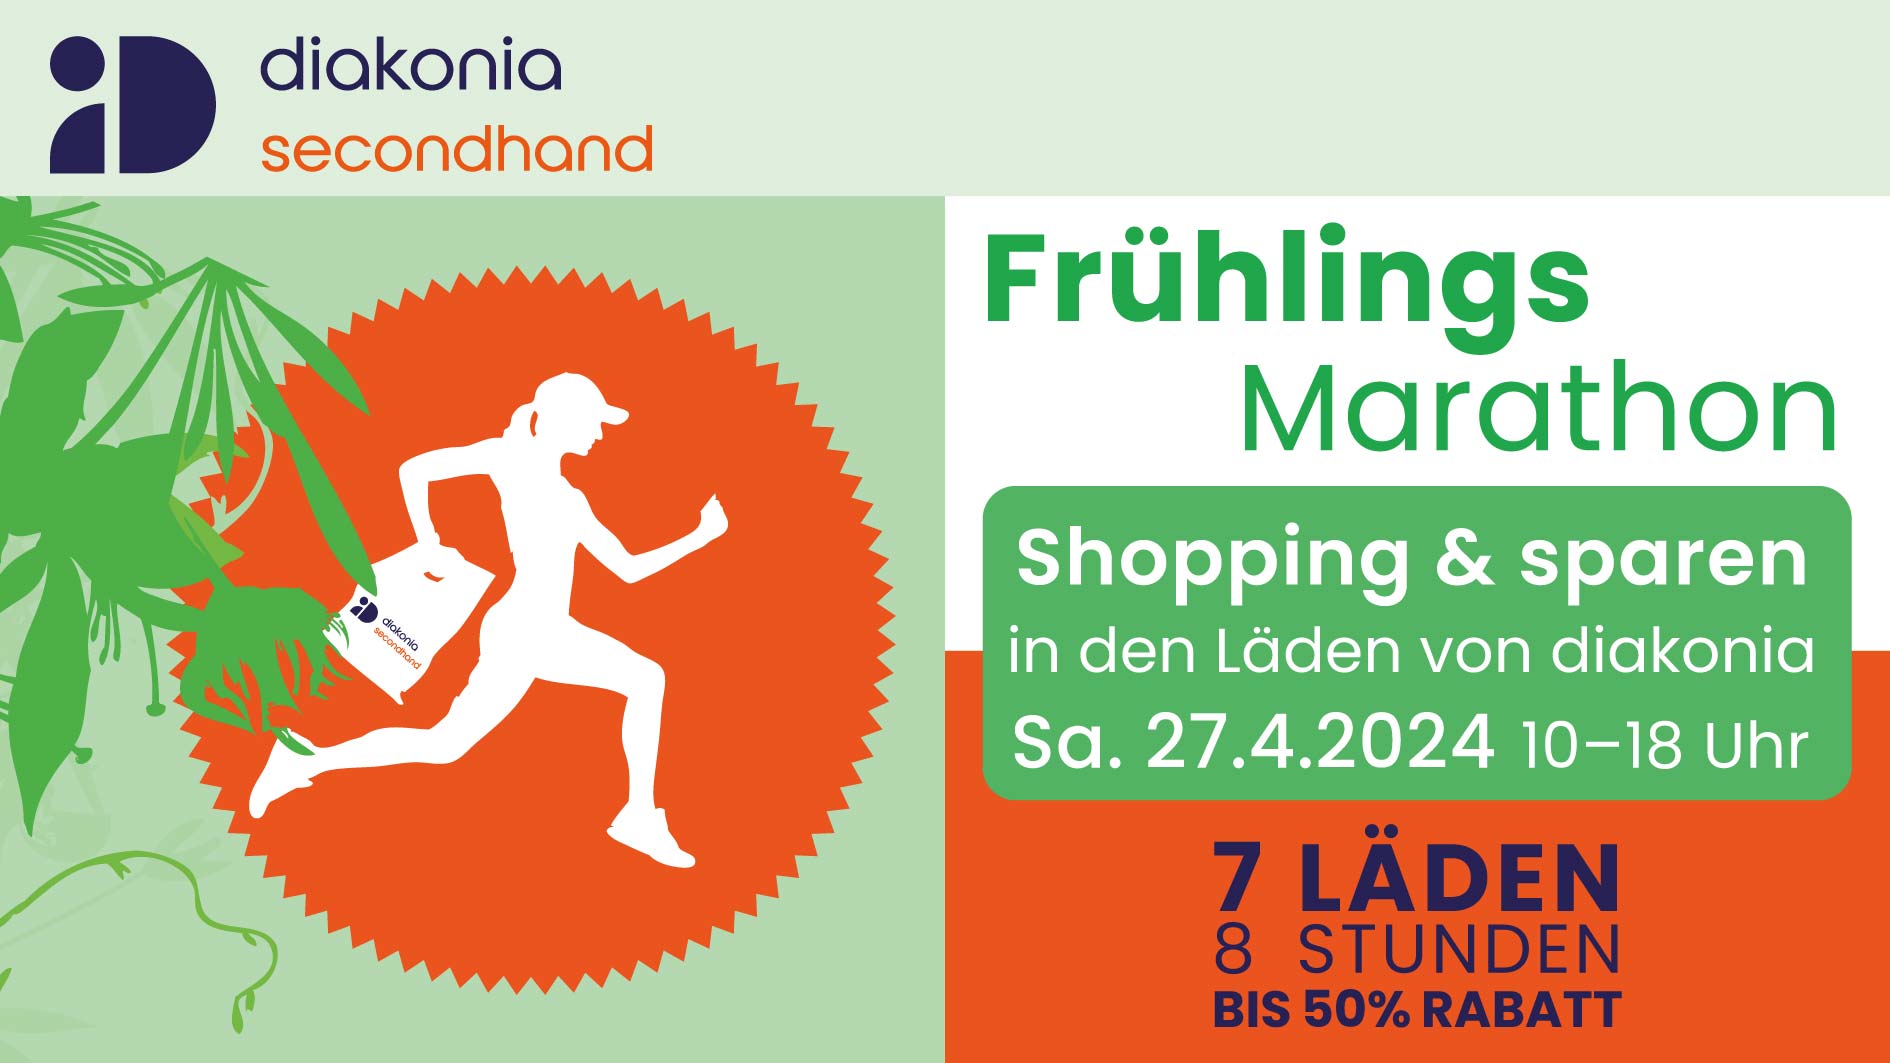 diakonia Secondhand Shopping Marathon am 27. April